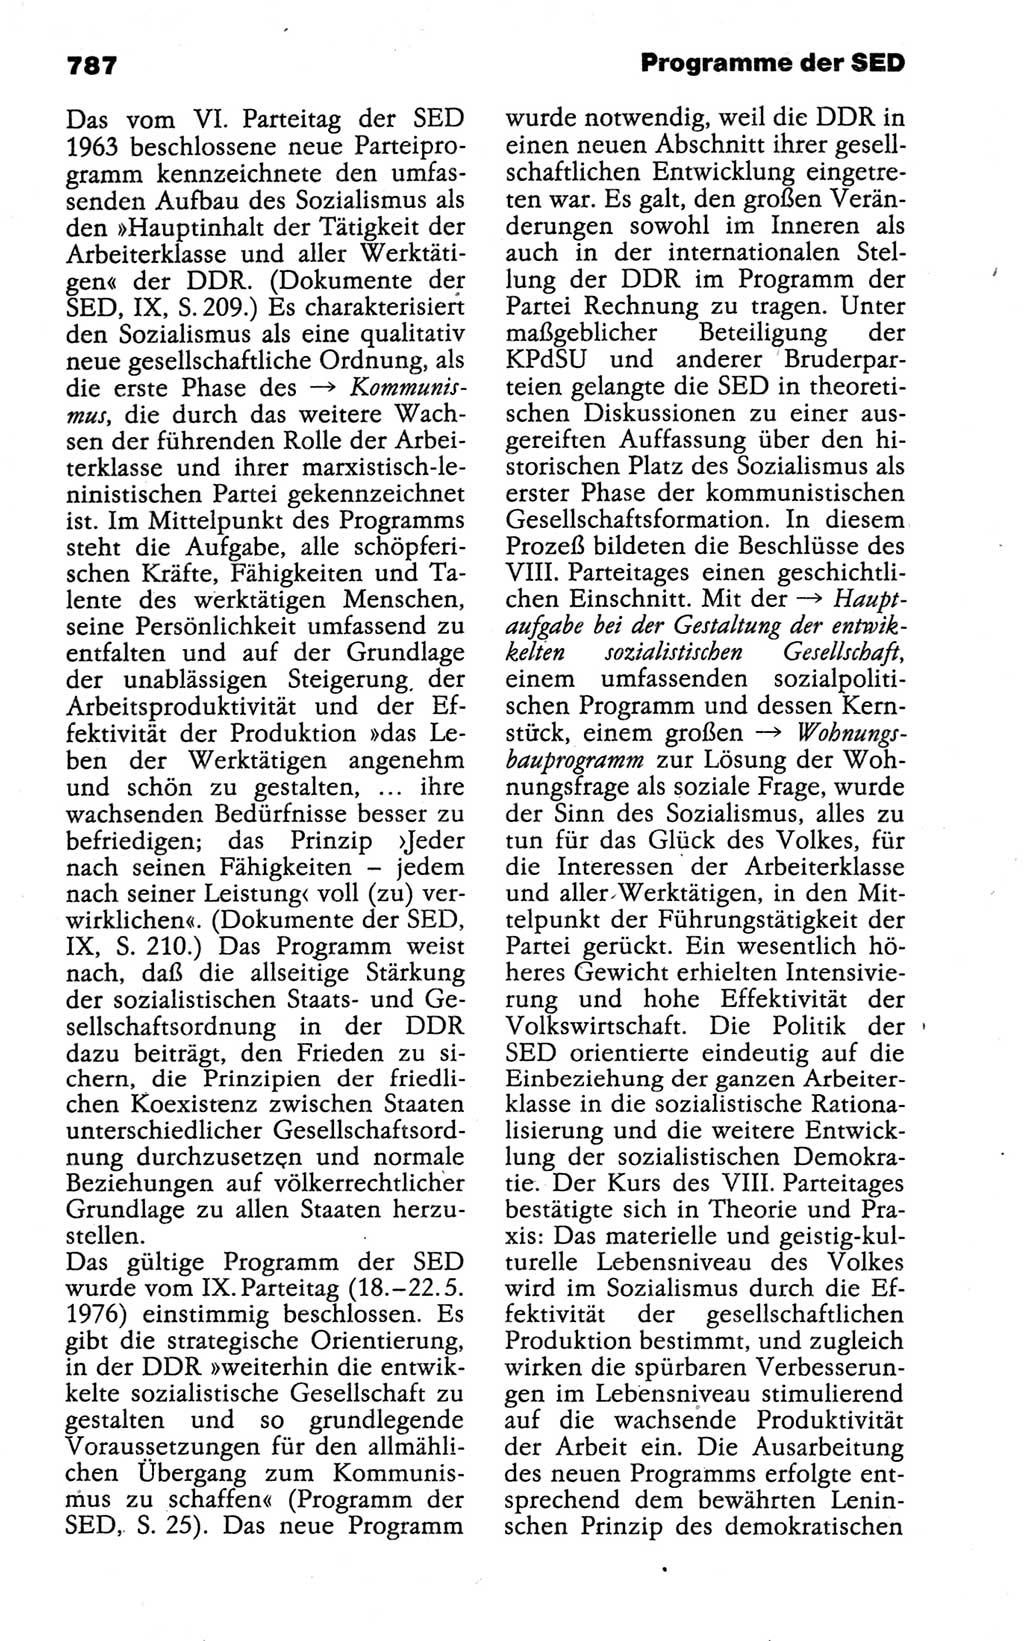 Kleines politisches Wörterbuch [Deutsche Demokratische Republik (DDR)] 1988, Seite 787 (Kl. pol. Wb. DDR 1988, S. 787)